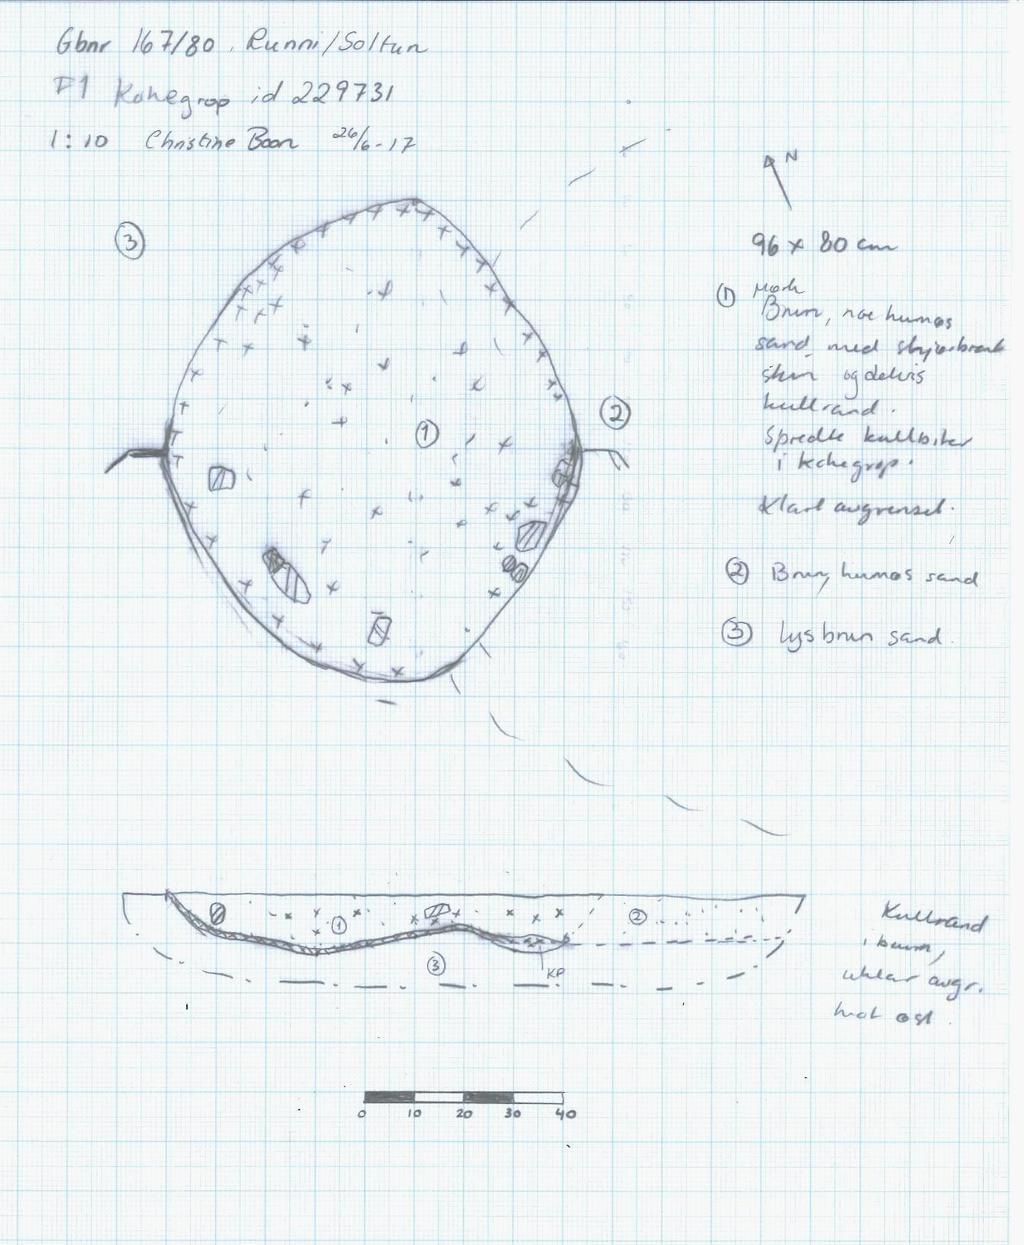 Det a l jreg u l e r i n g Ru n n i Figur 1: Tegning av kokegrop id 229731 i plan og profil Konklusjon